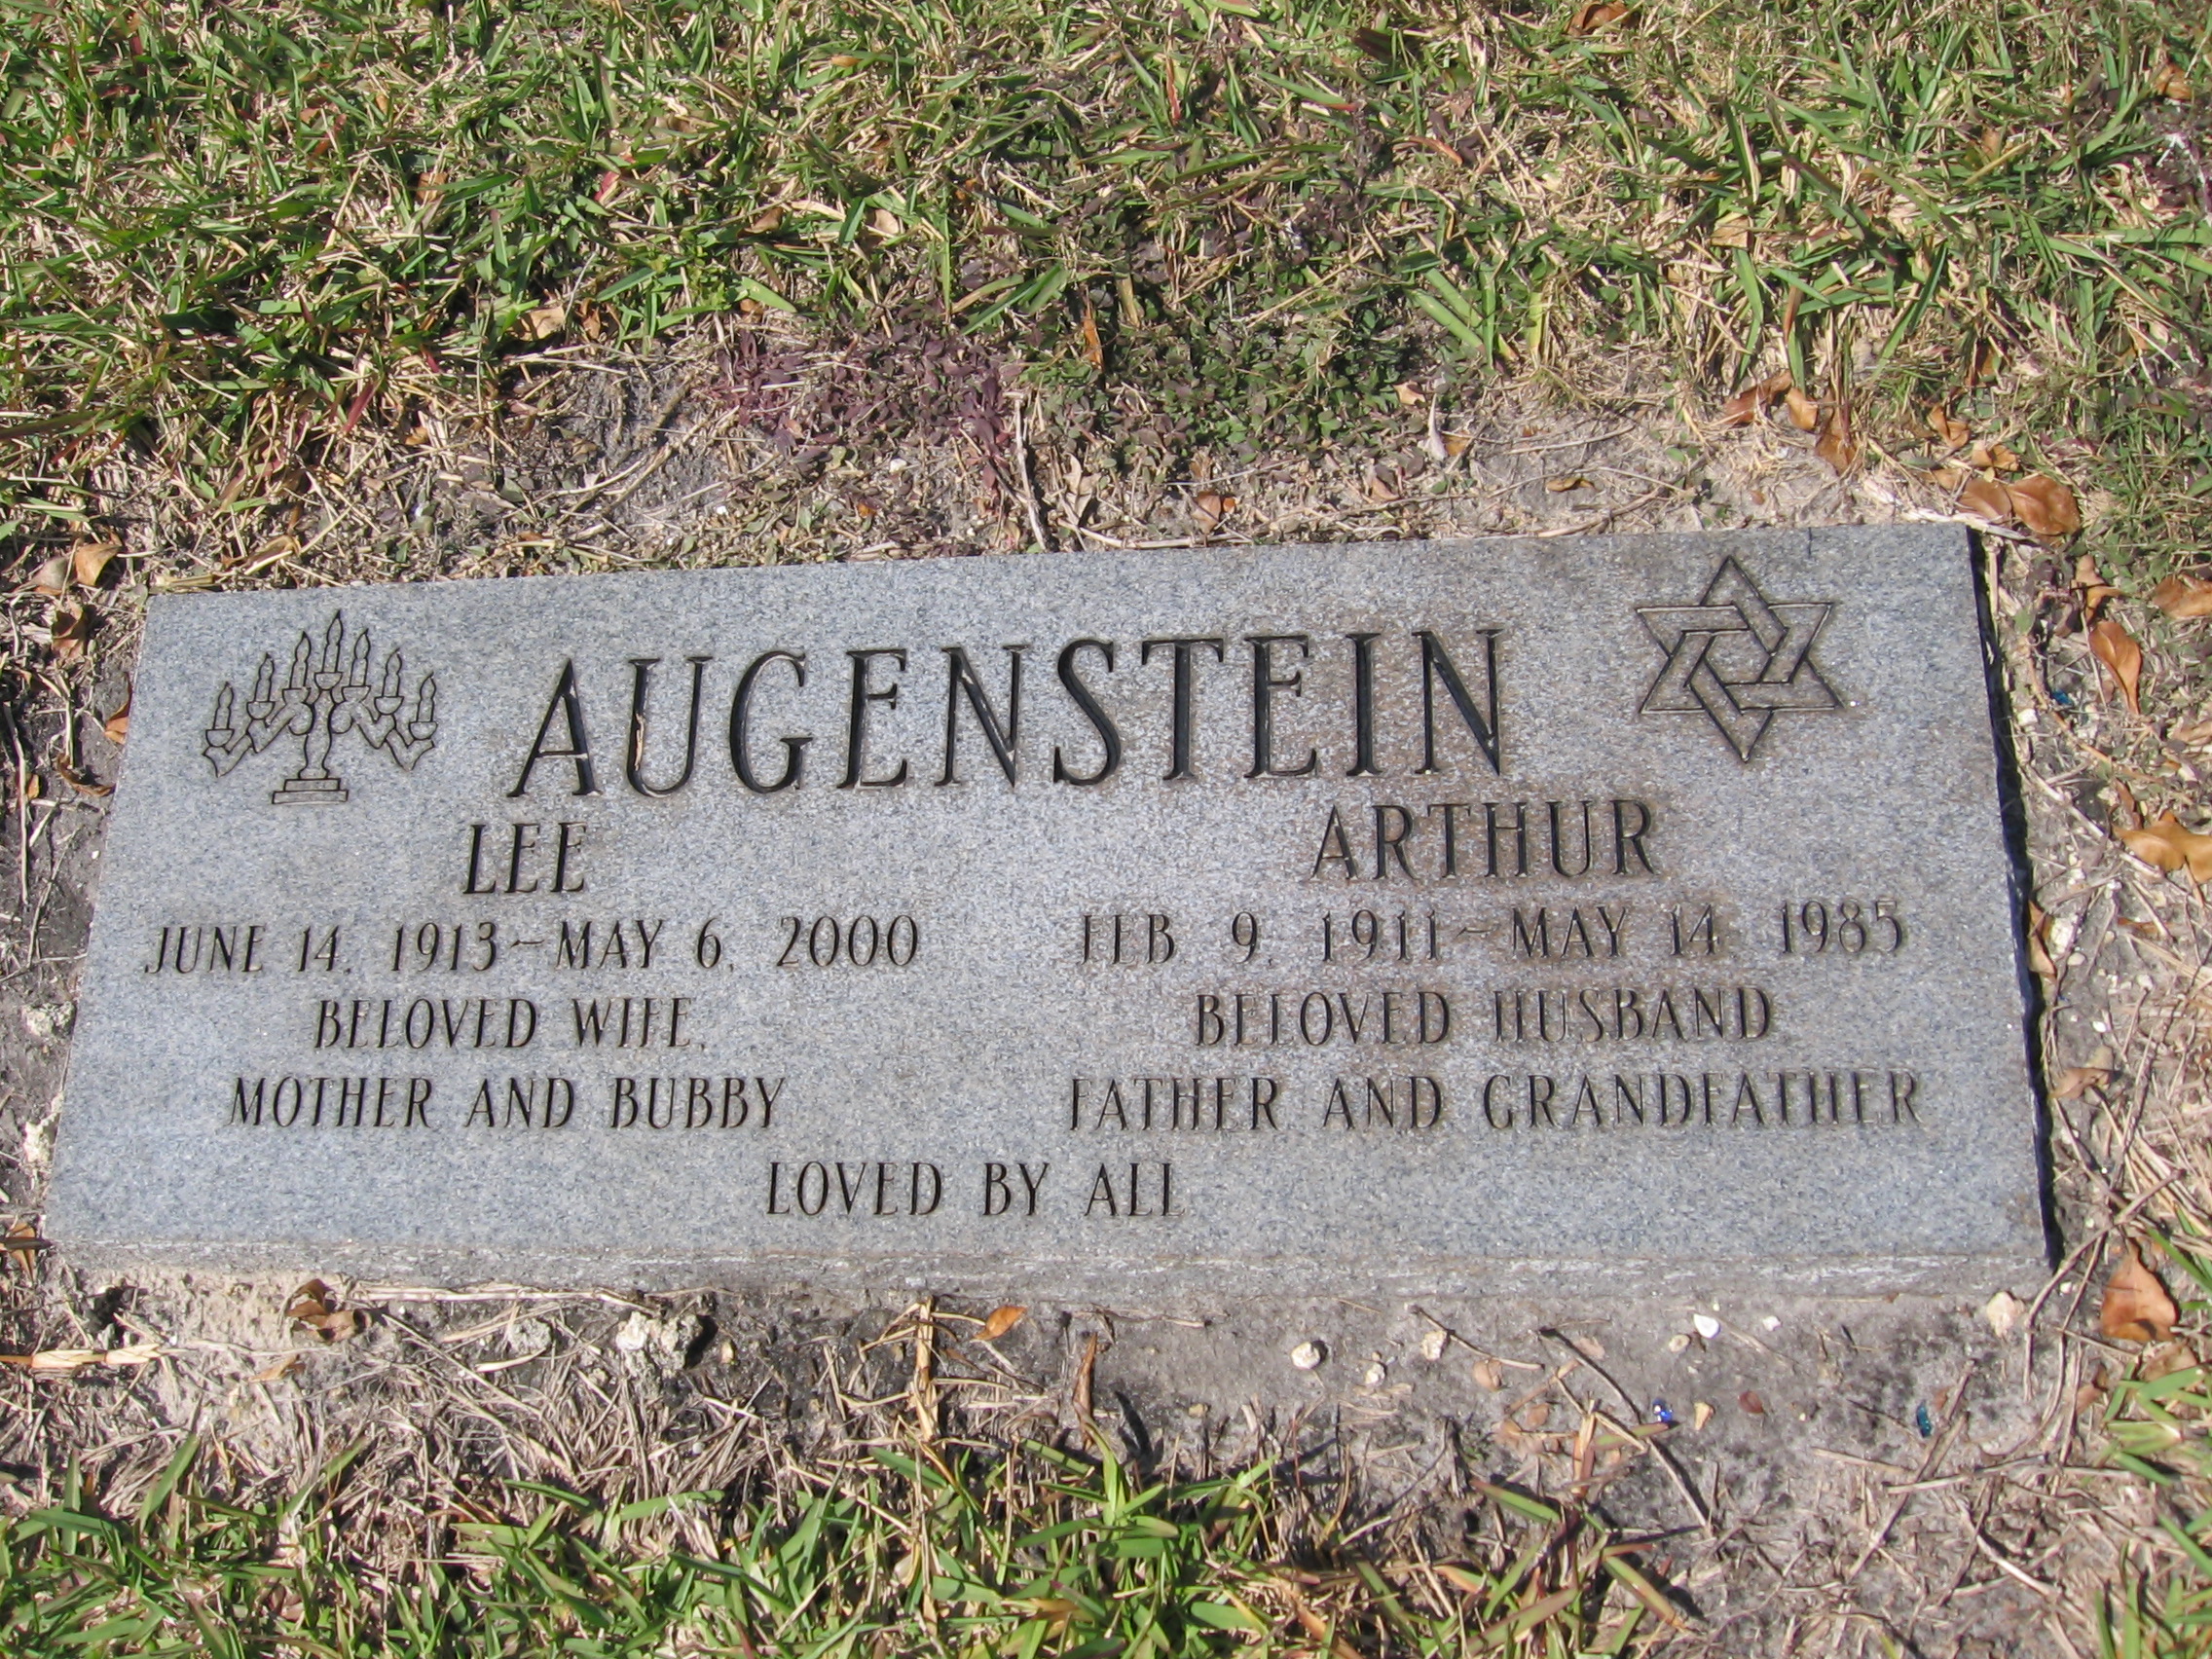 Arthur Augenstein